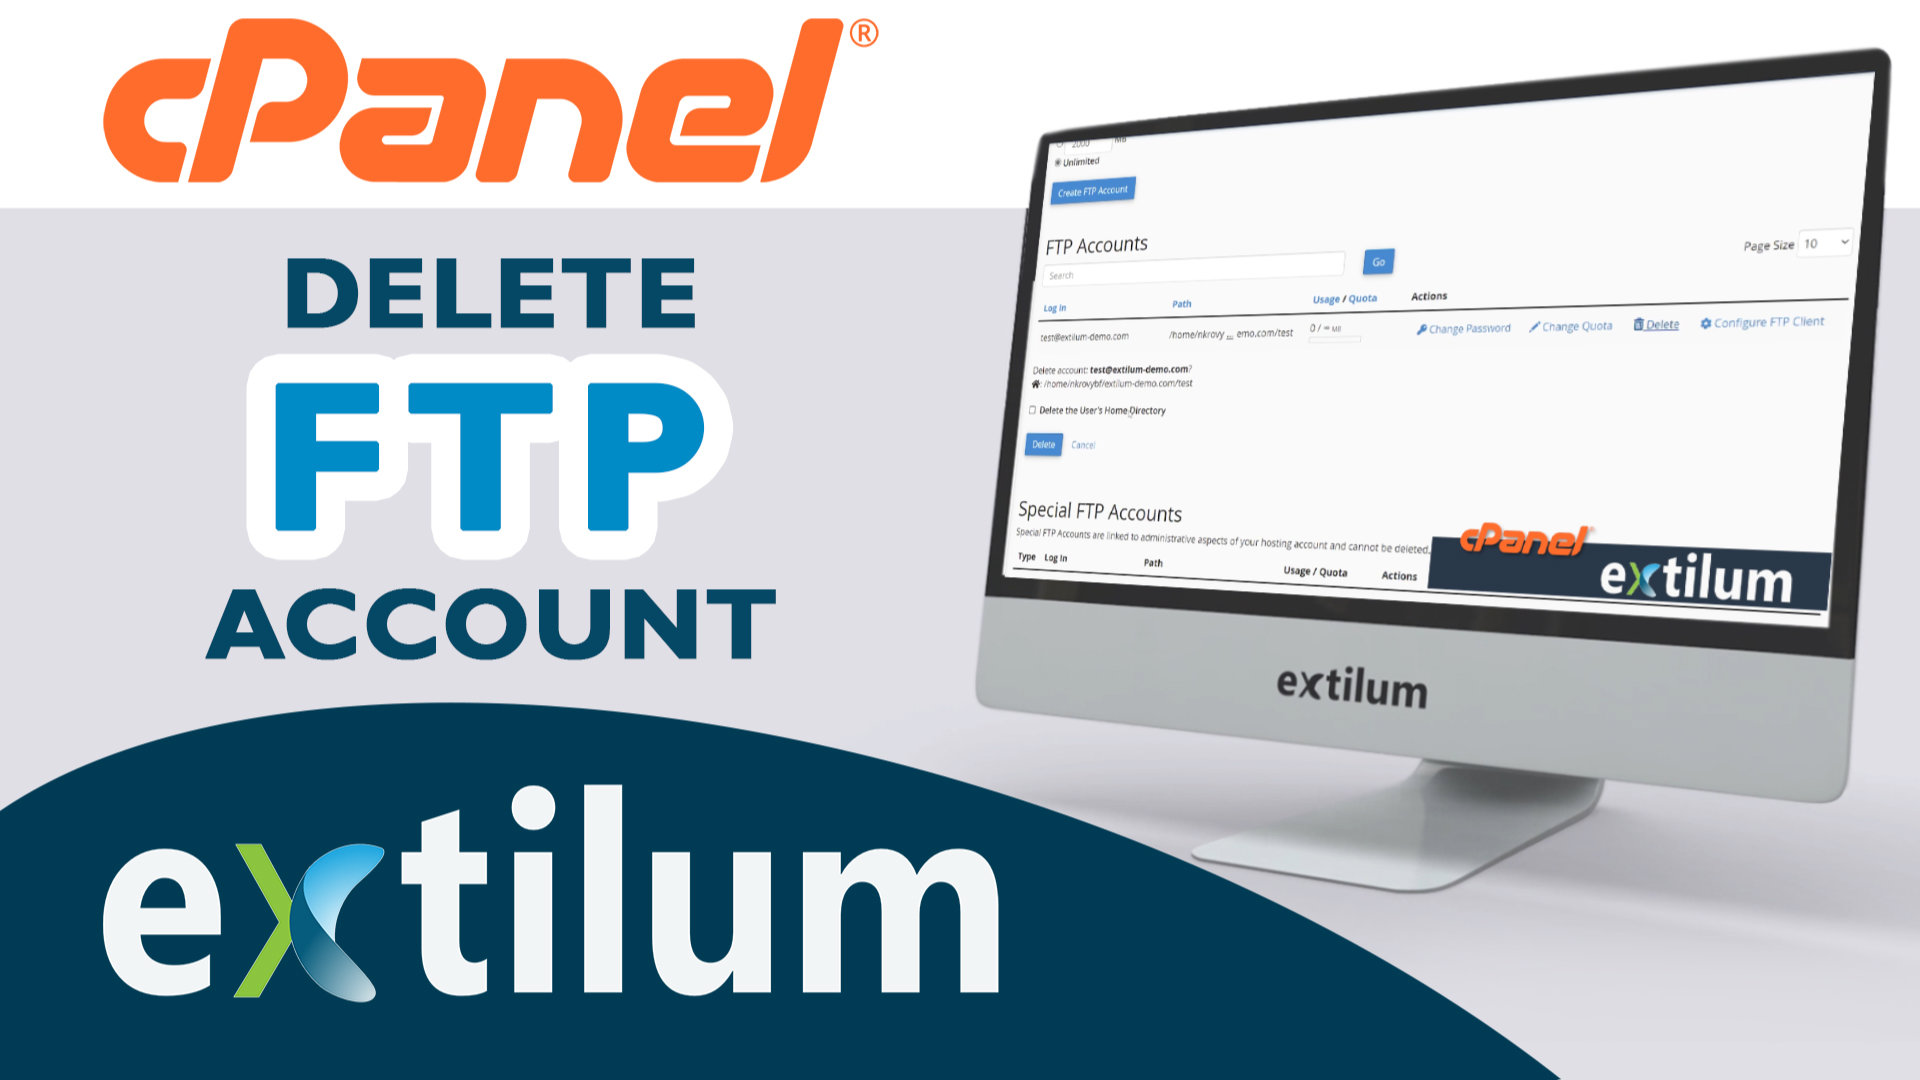 Extilum cpanel - delete ftp account